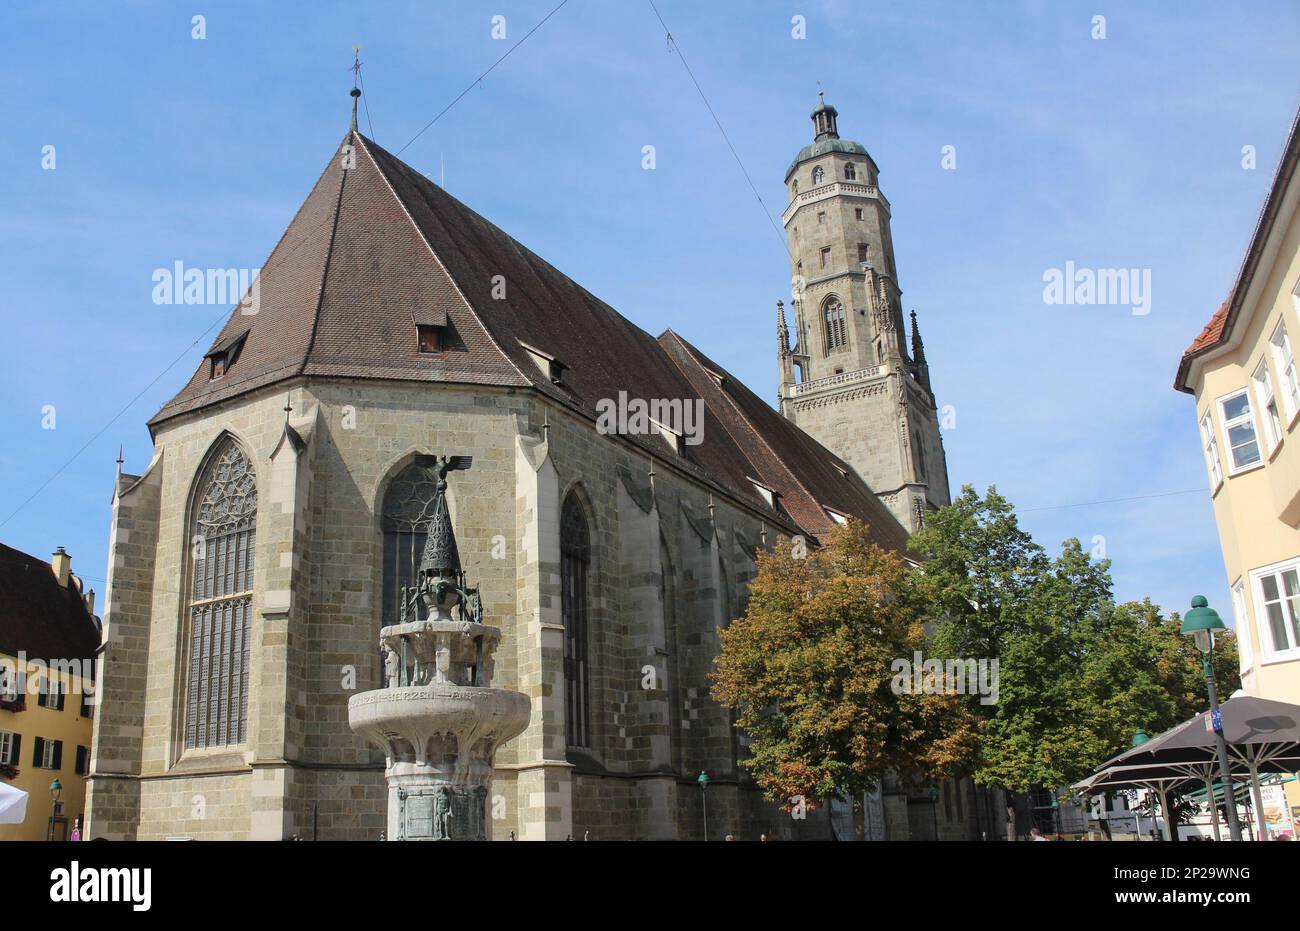 Eglise Saint George dans la vieille ville de Nördlingen, Allemagne Banque D'Images